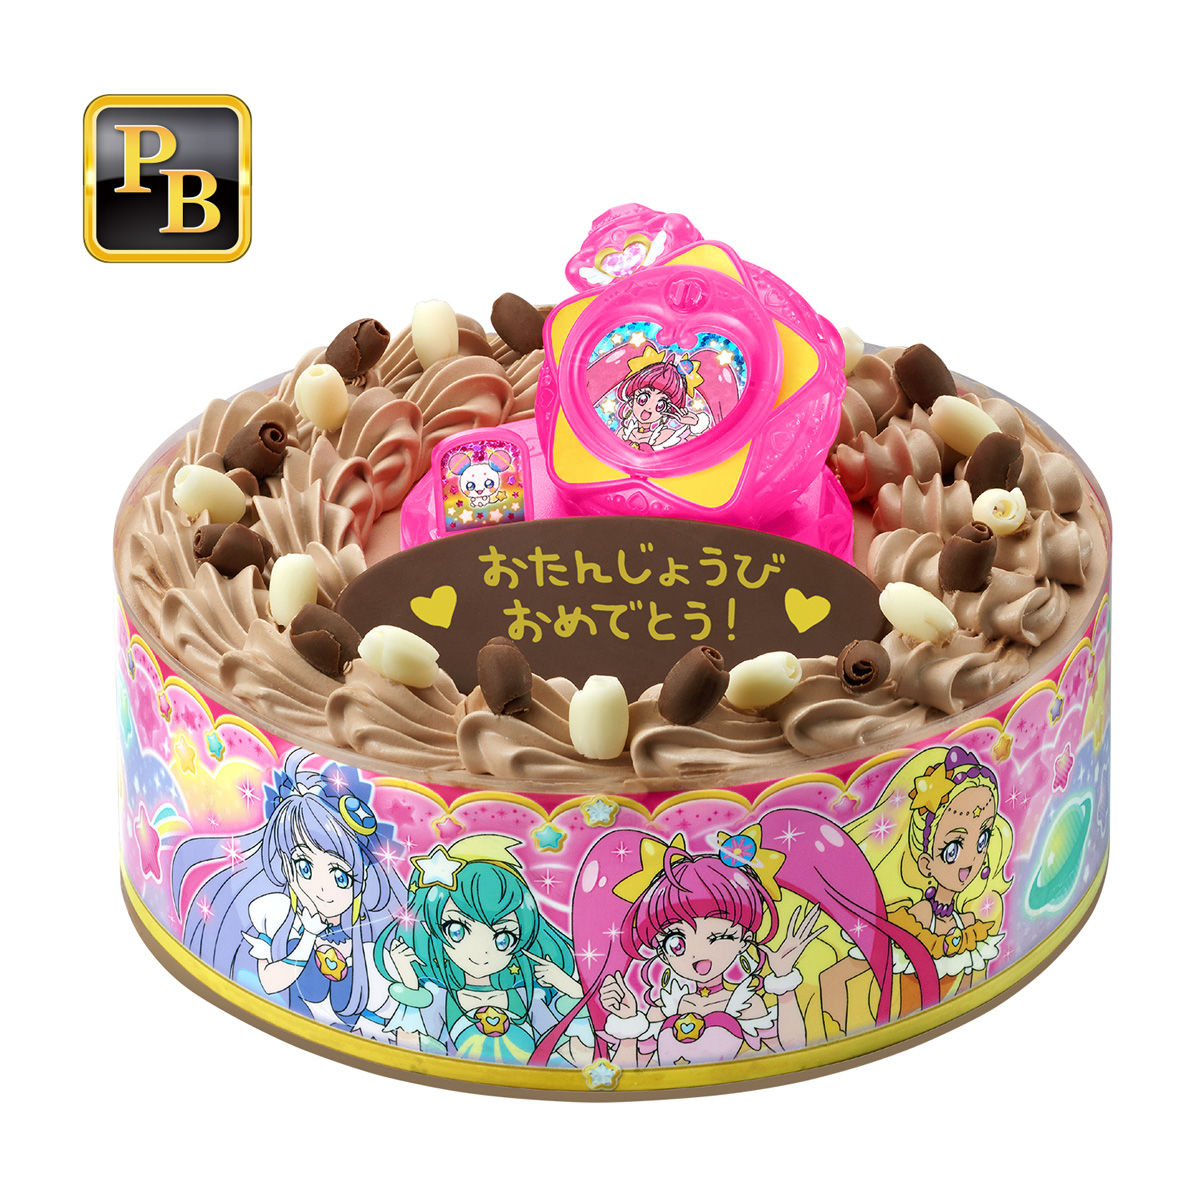 キャラデコお祝いケーキ スター トゥインクルプリキュア チョコクリーム 5号サイズ 発売日 19年2月22日 バンダイ キャンディ公式サイト